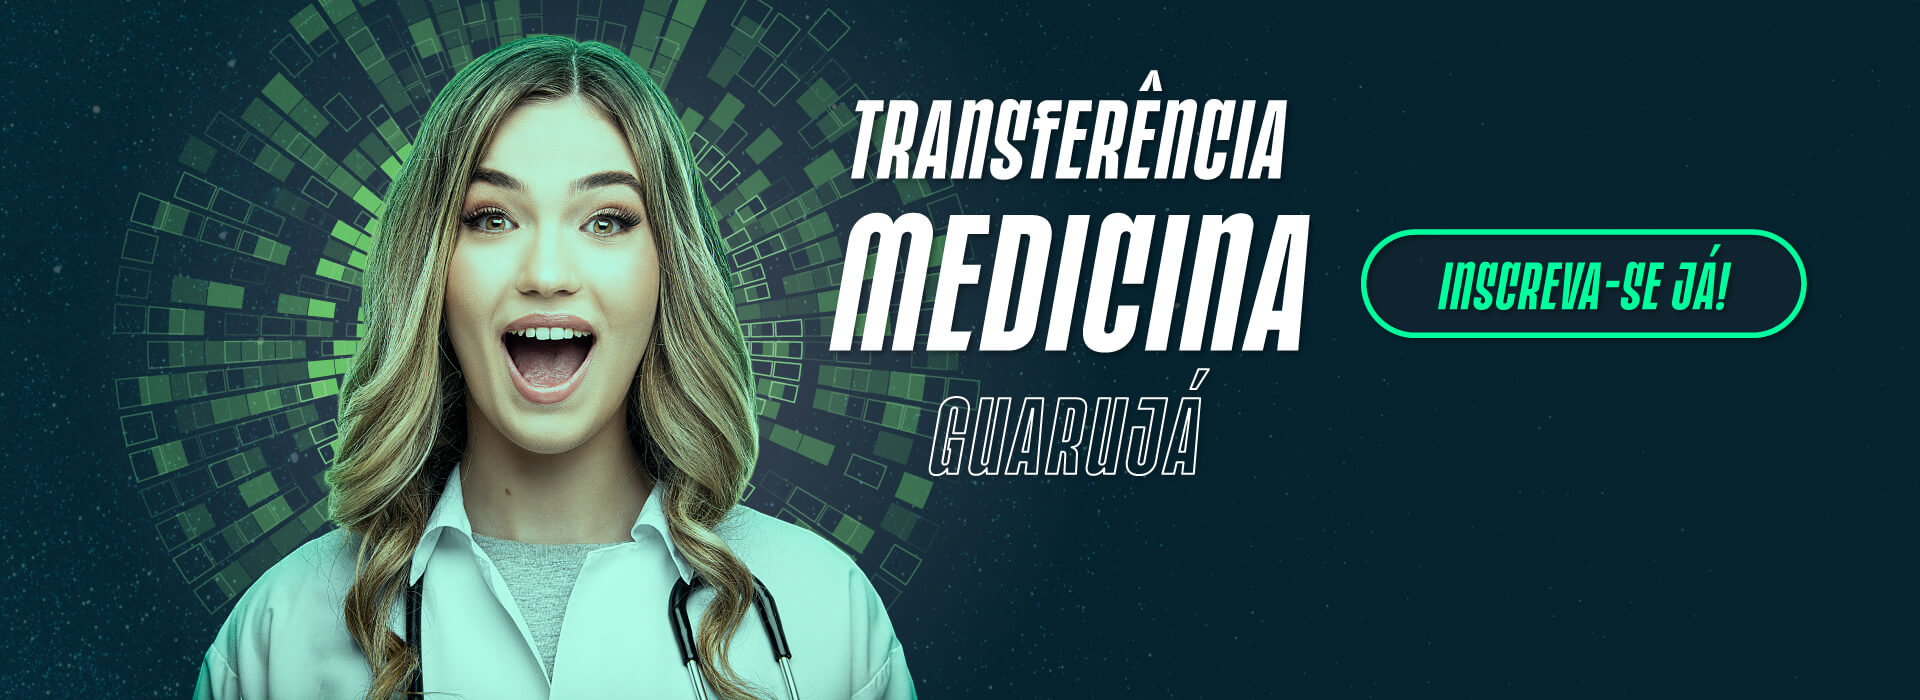 Transferência Medicina Guarujá